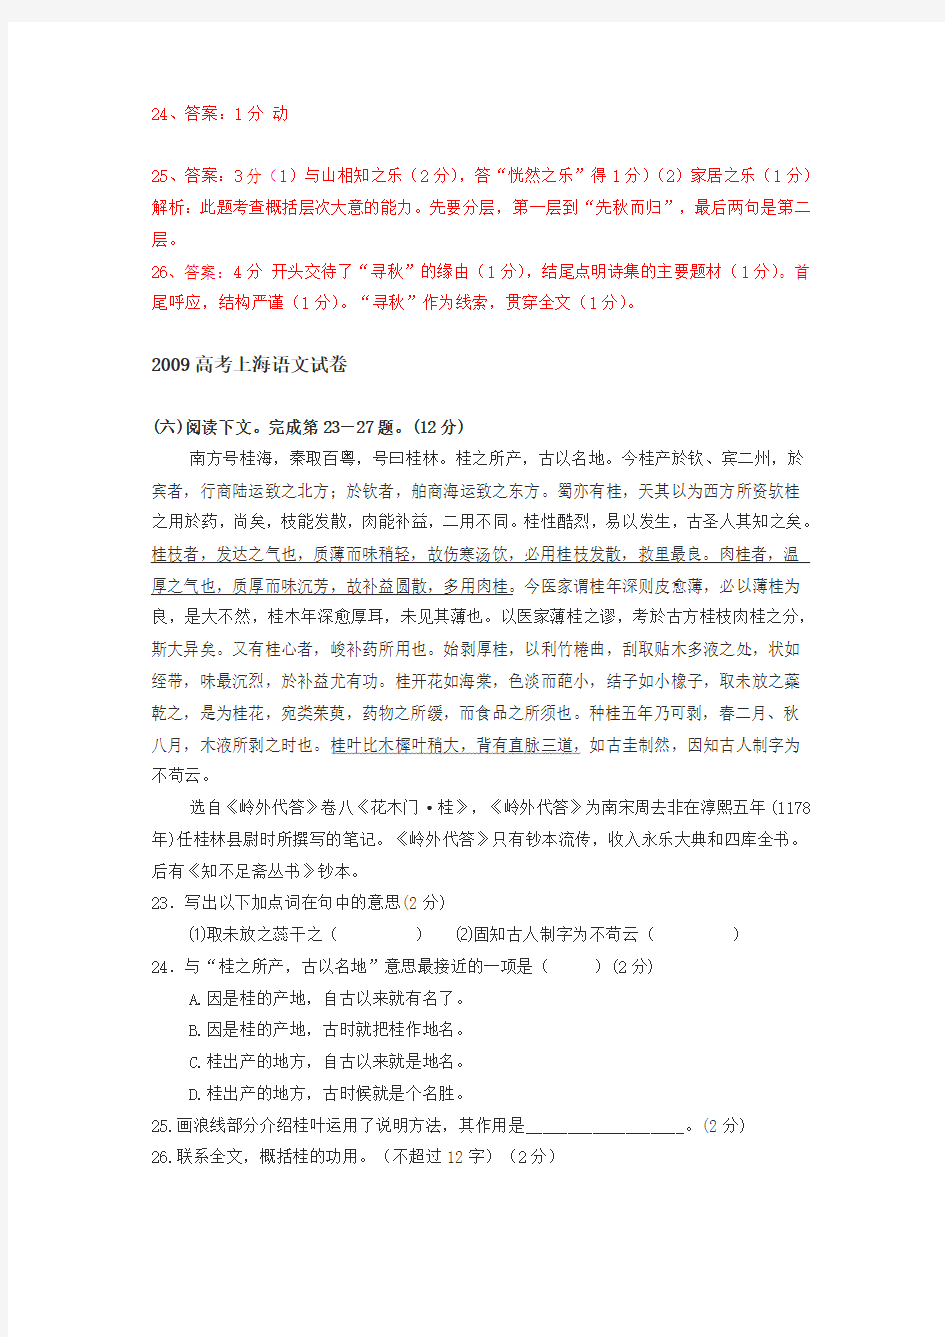 08年——18年春十年上海高考文言文二整理